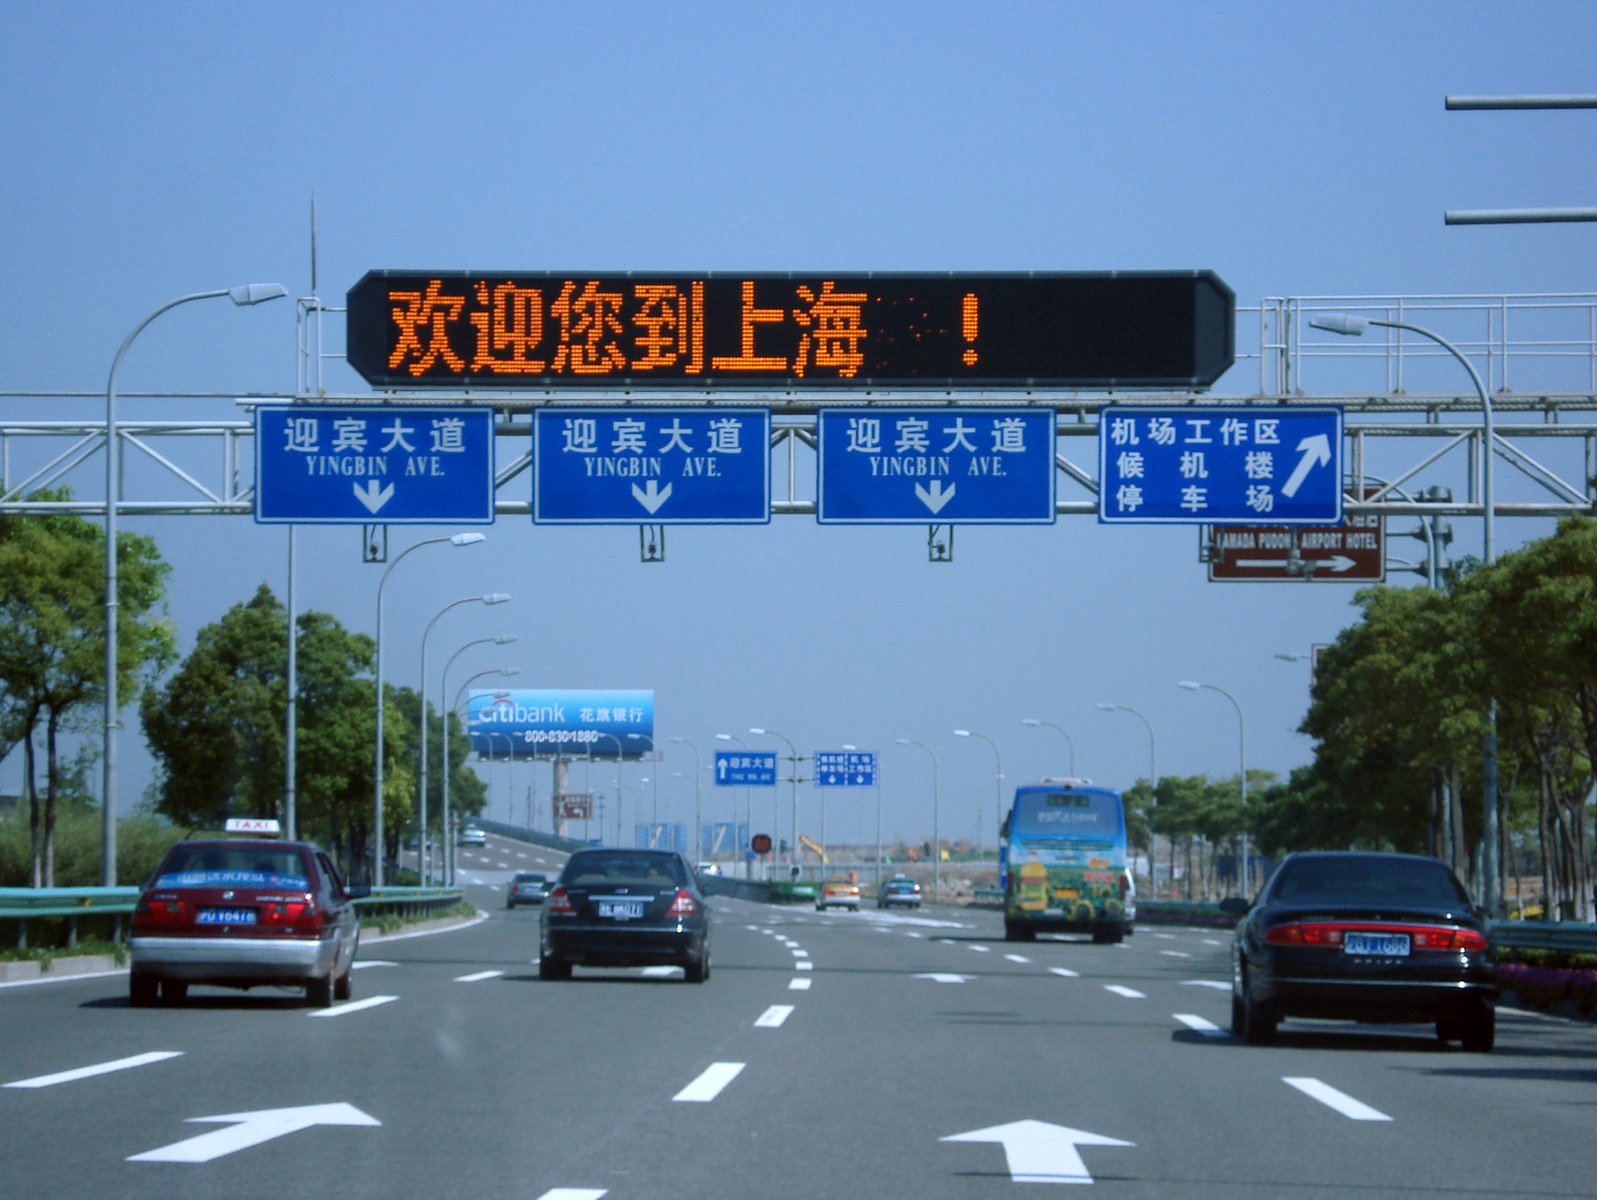 Shanghai road